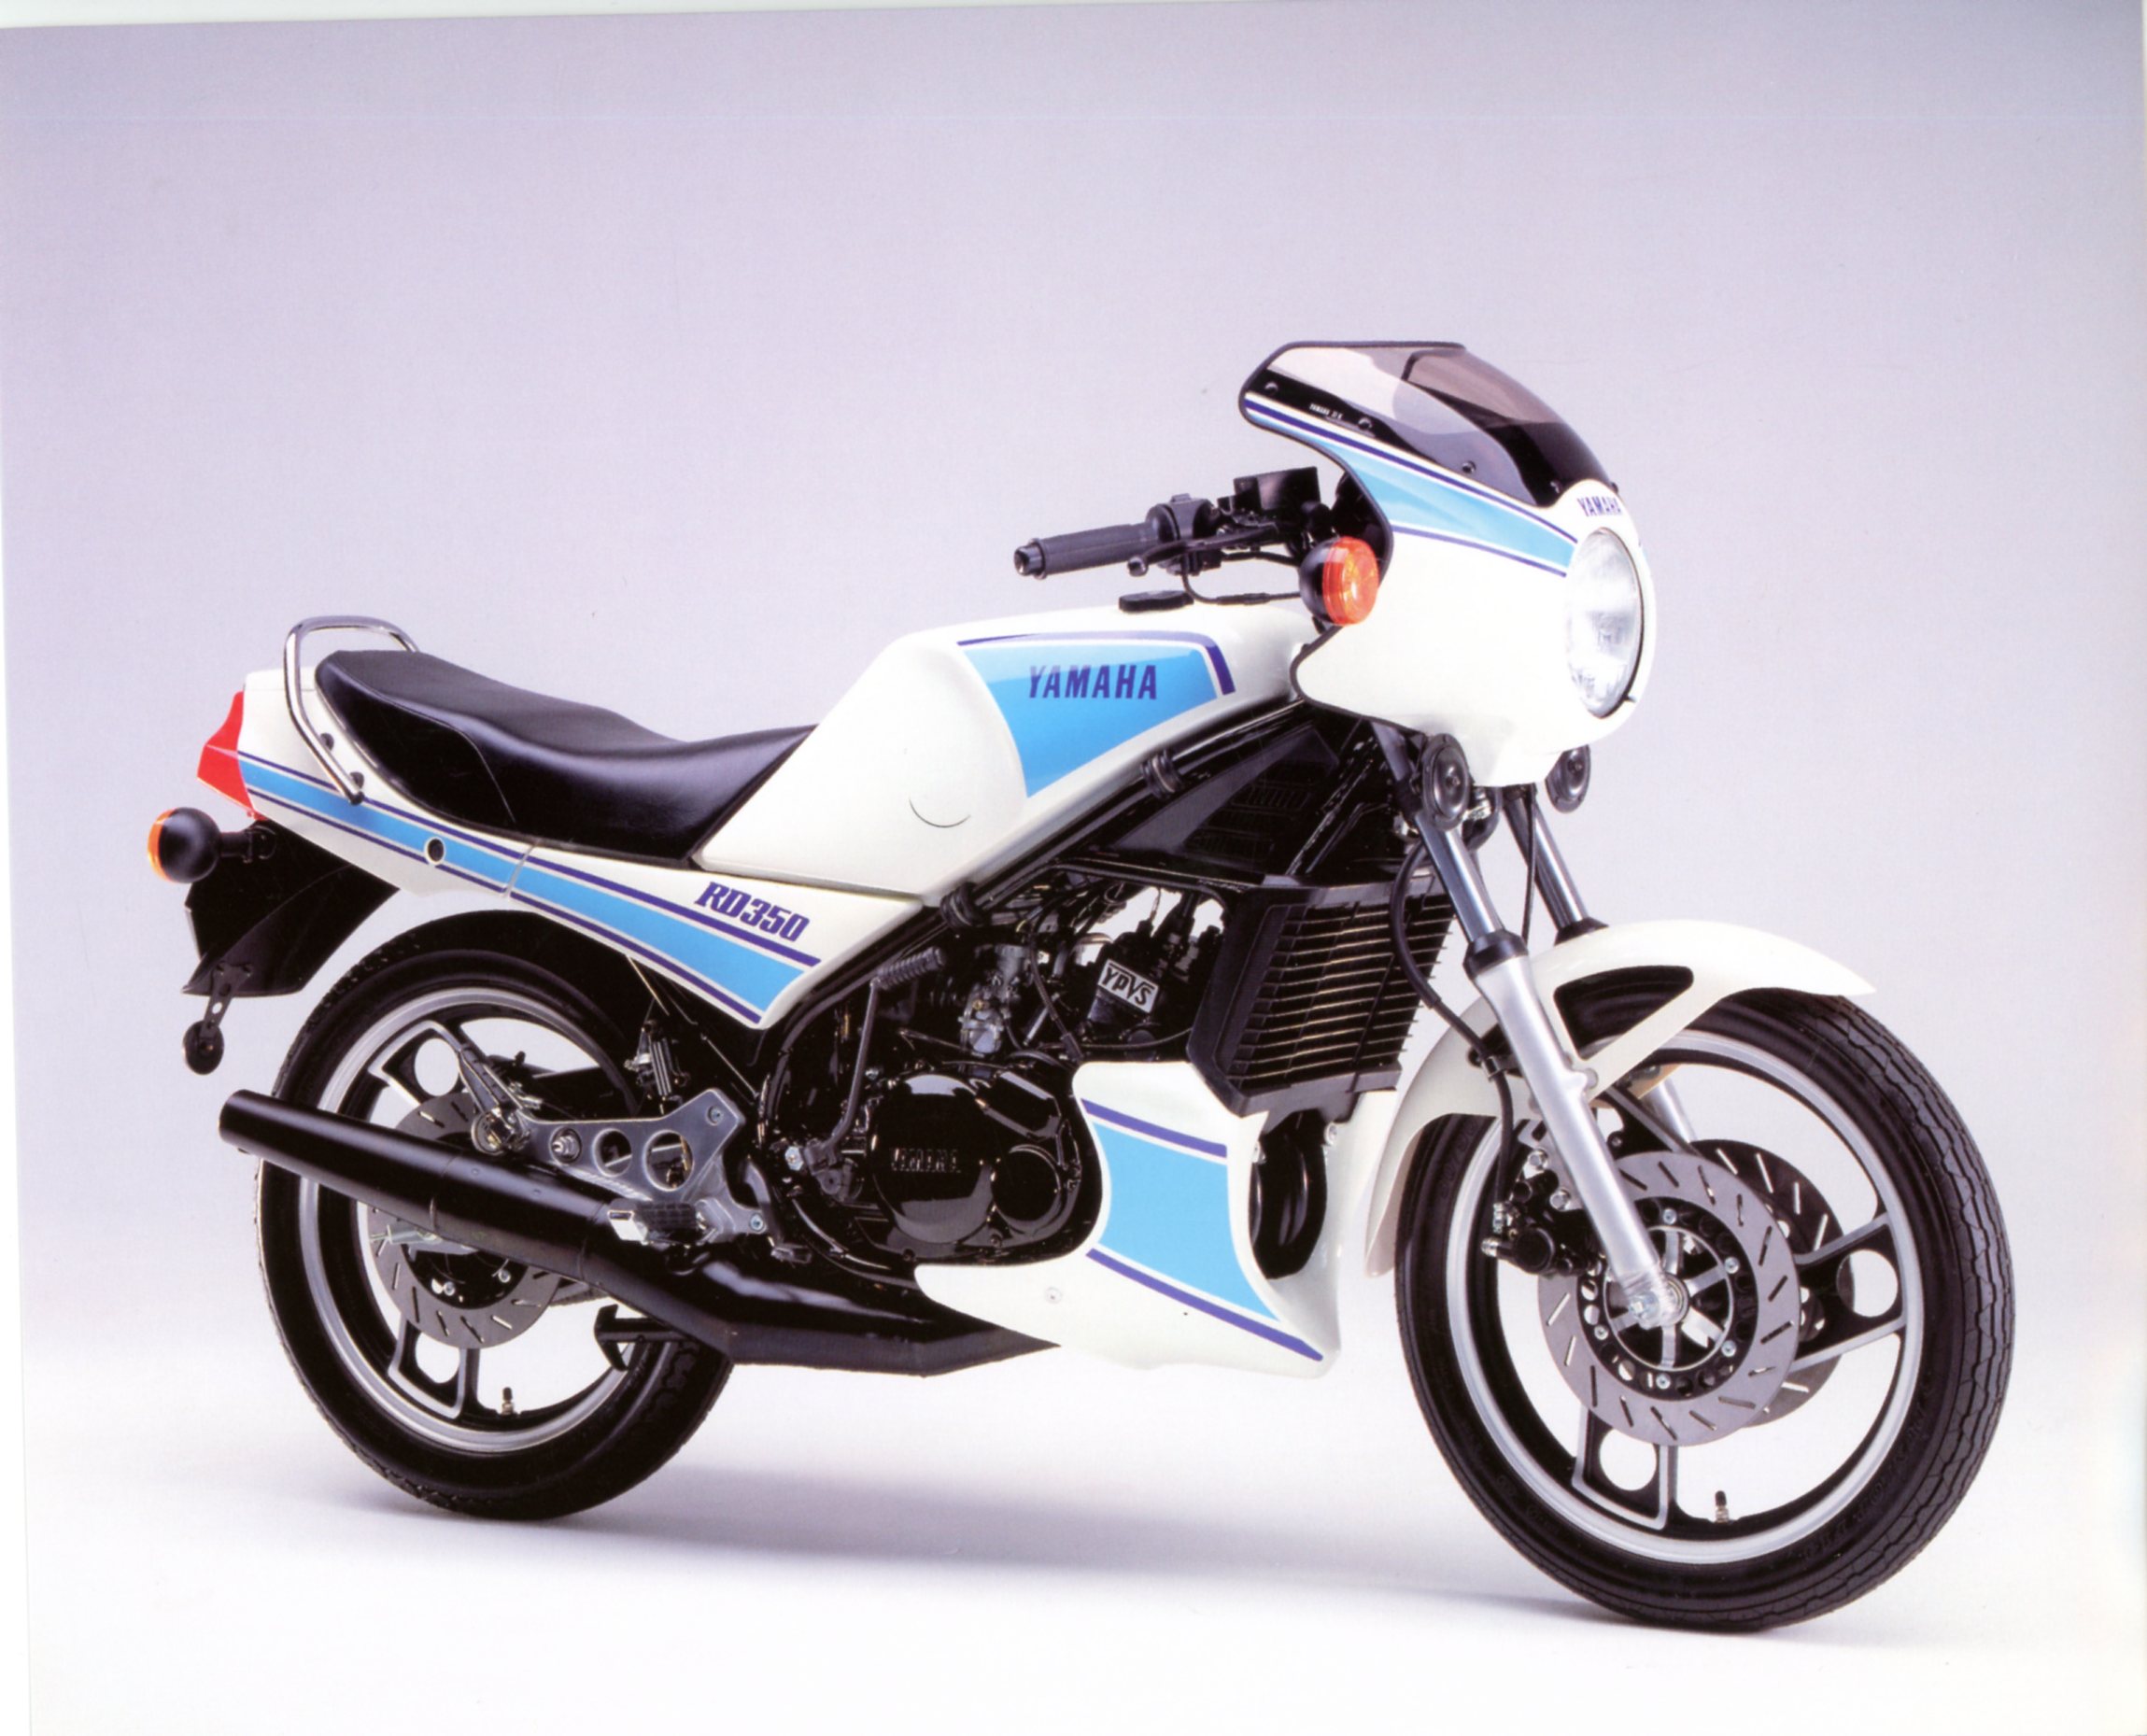 MOTO YAMAHA 350 RDLC 1980 - FICHE MOTO CARACTÉRISTIQUES